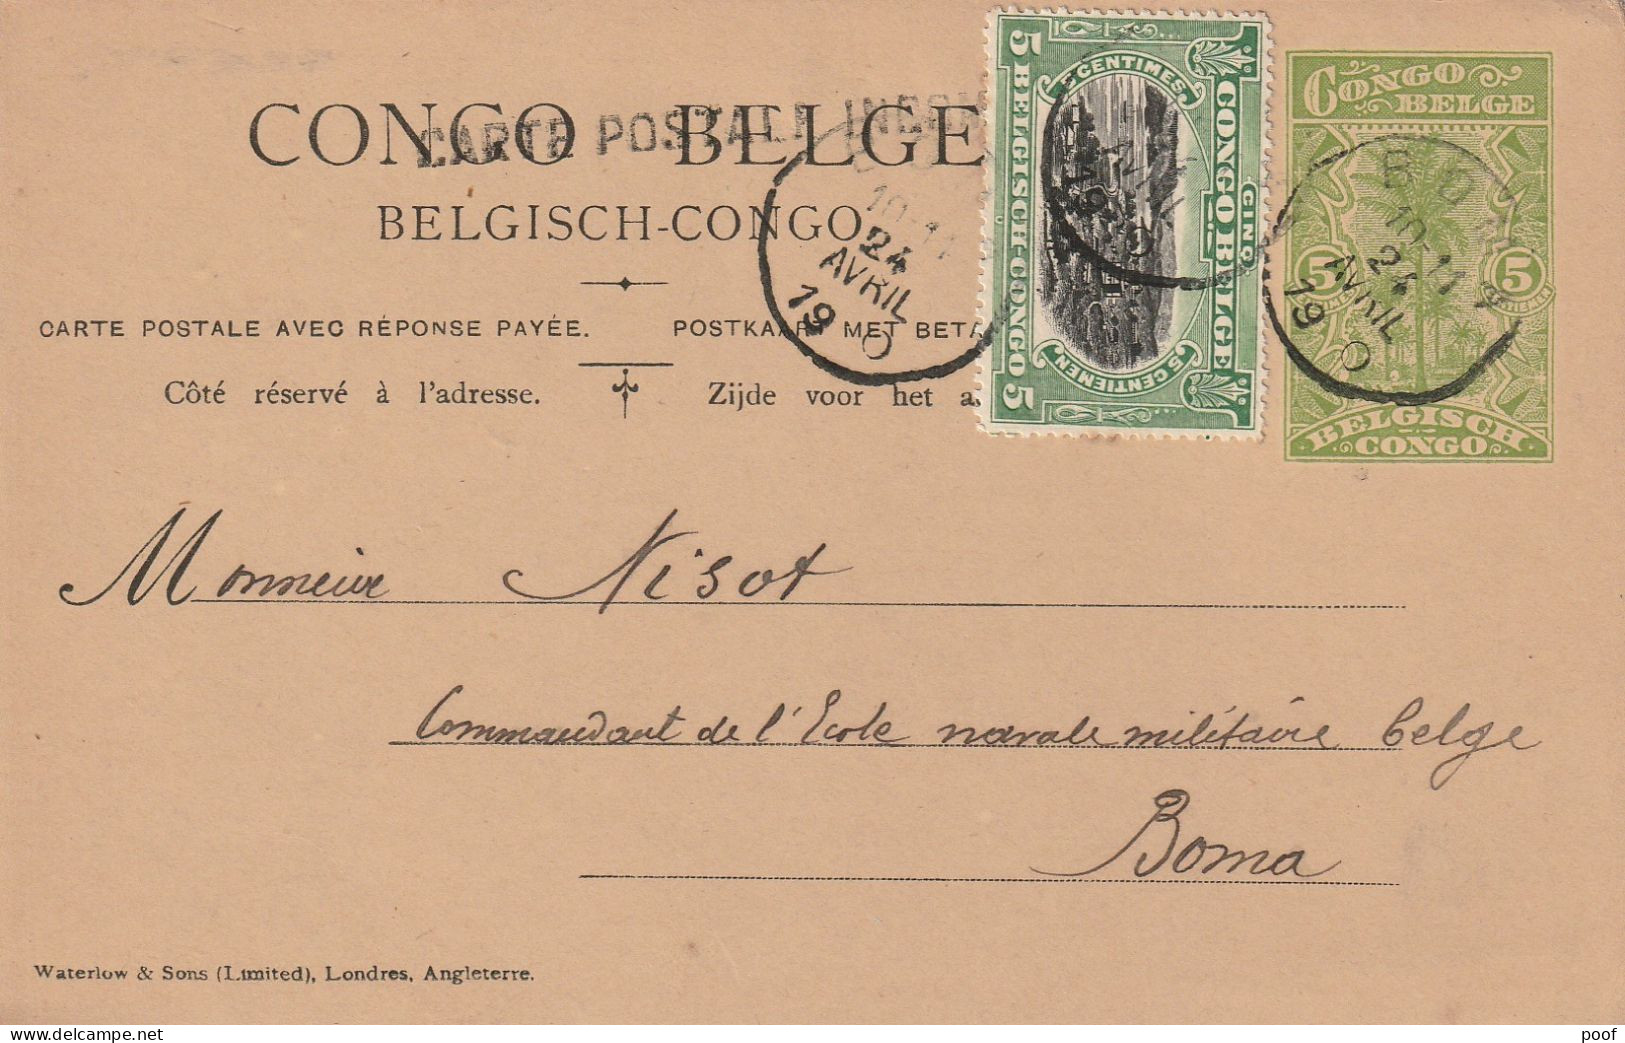 Congo-Belge : Carte Postale Avec Réponse Payée ---- 1920 - Covers & Documents